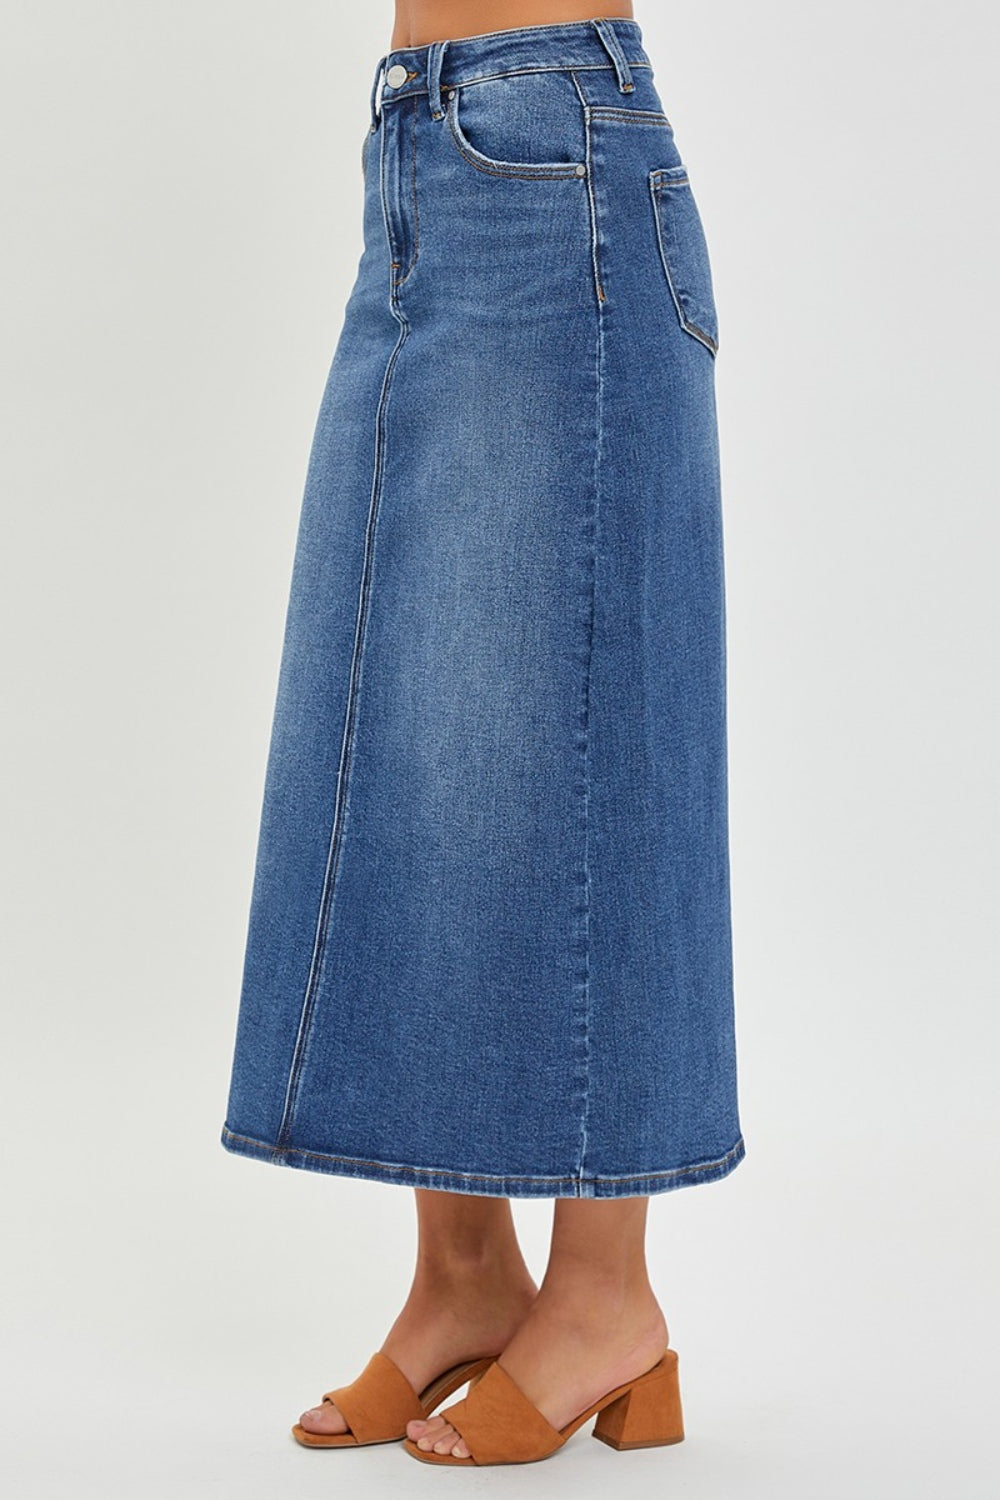 KESLEY High Rise Back Slit Denim Skirt New Women's Fashion Premium Cotton Jean Skirt